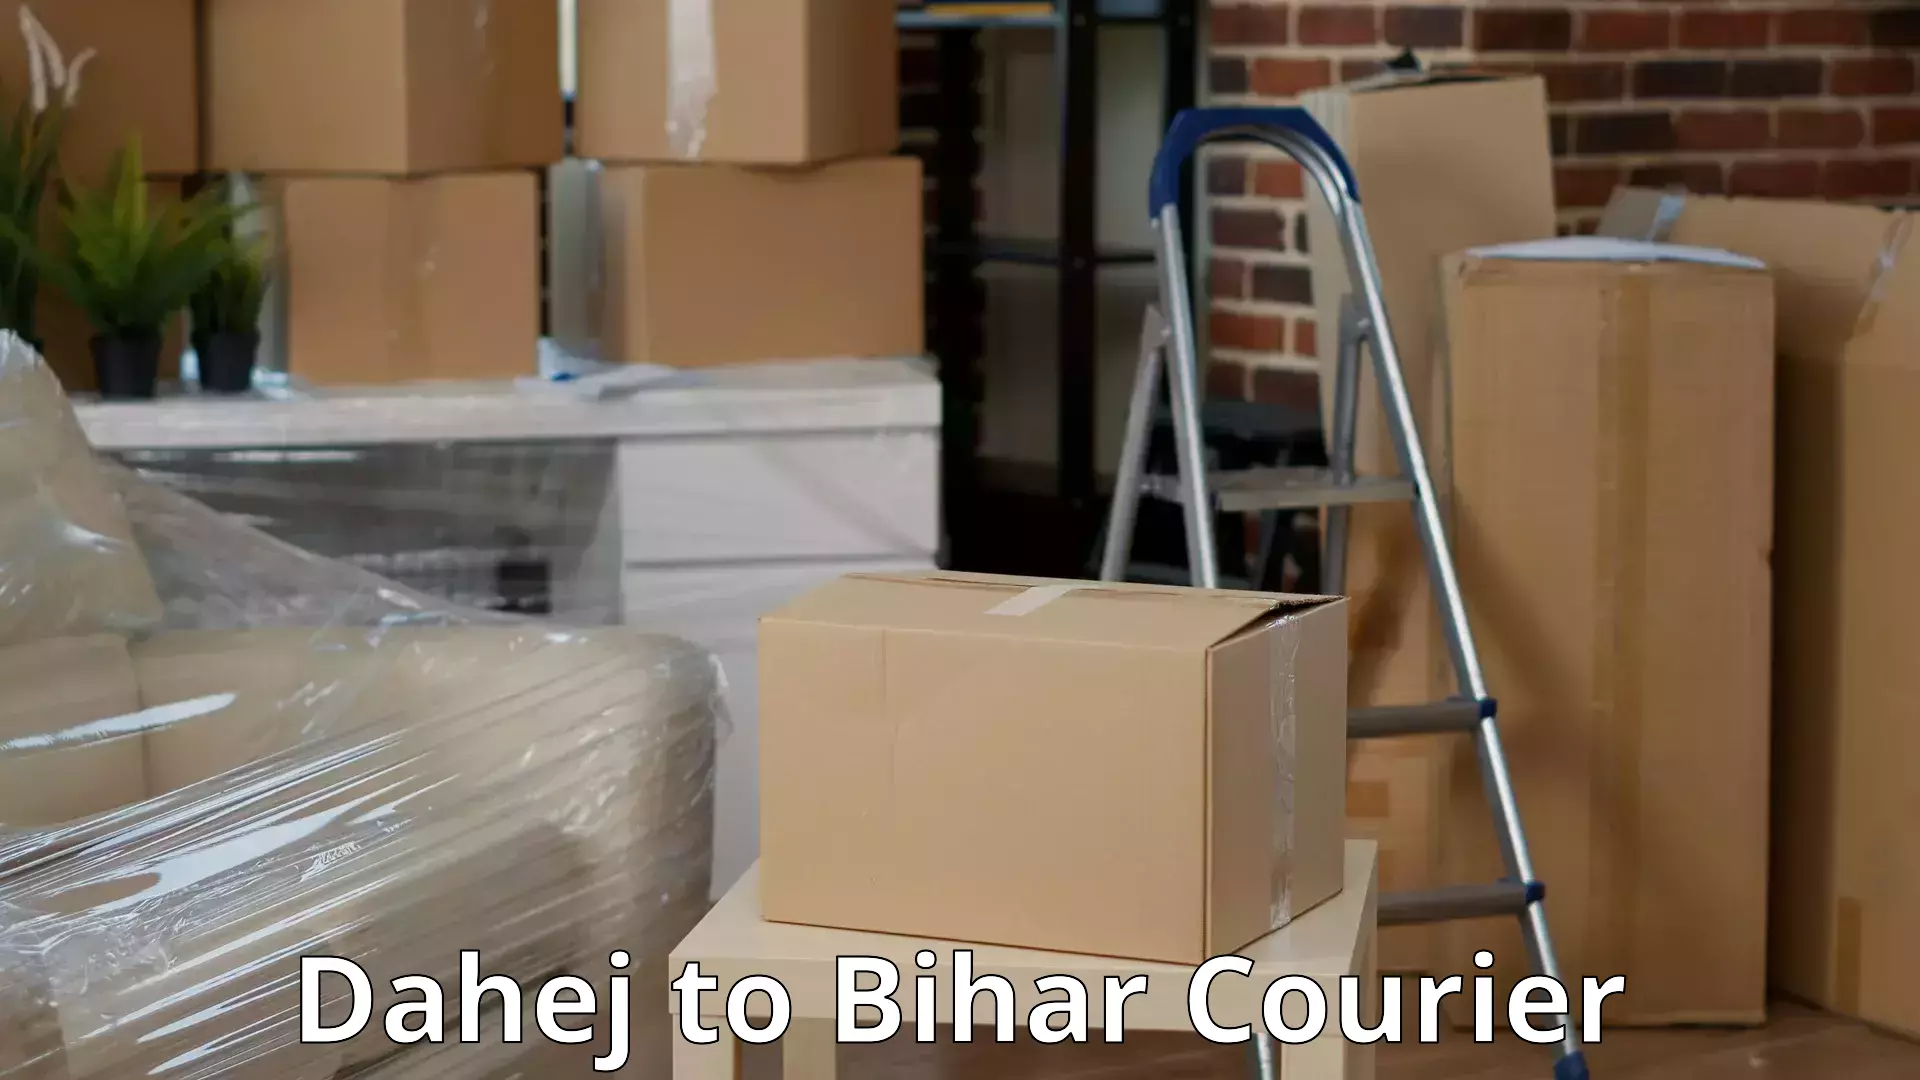 Affordable household movers Dahej to Khizarsarai